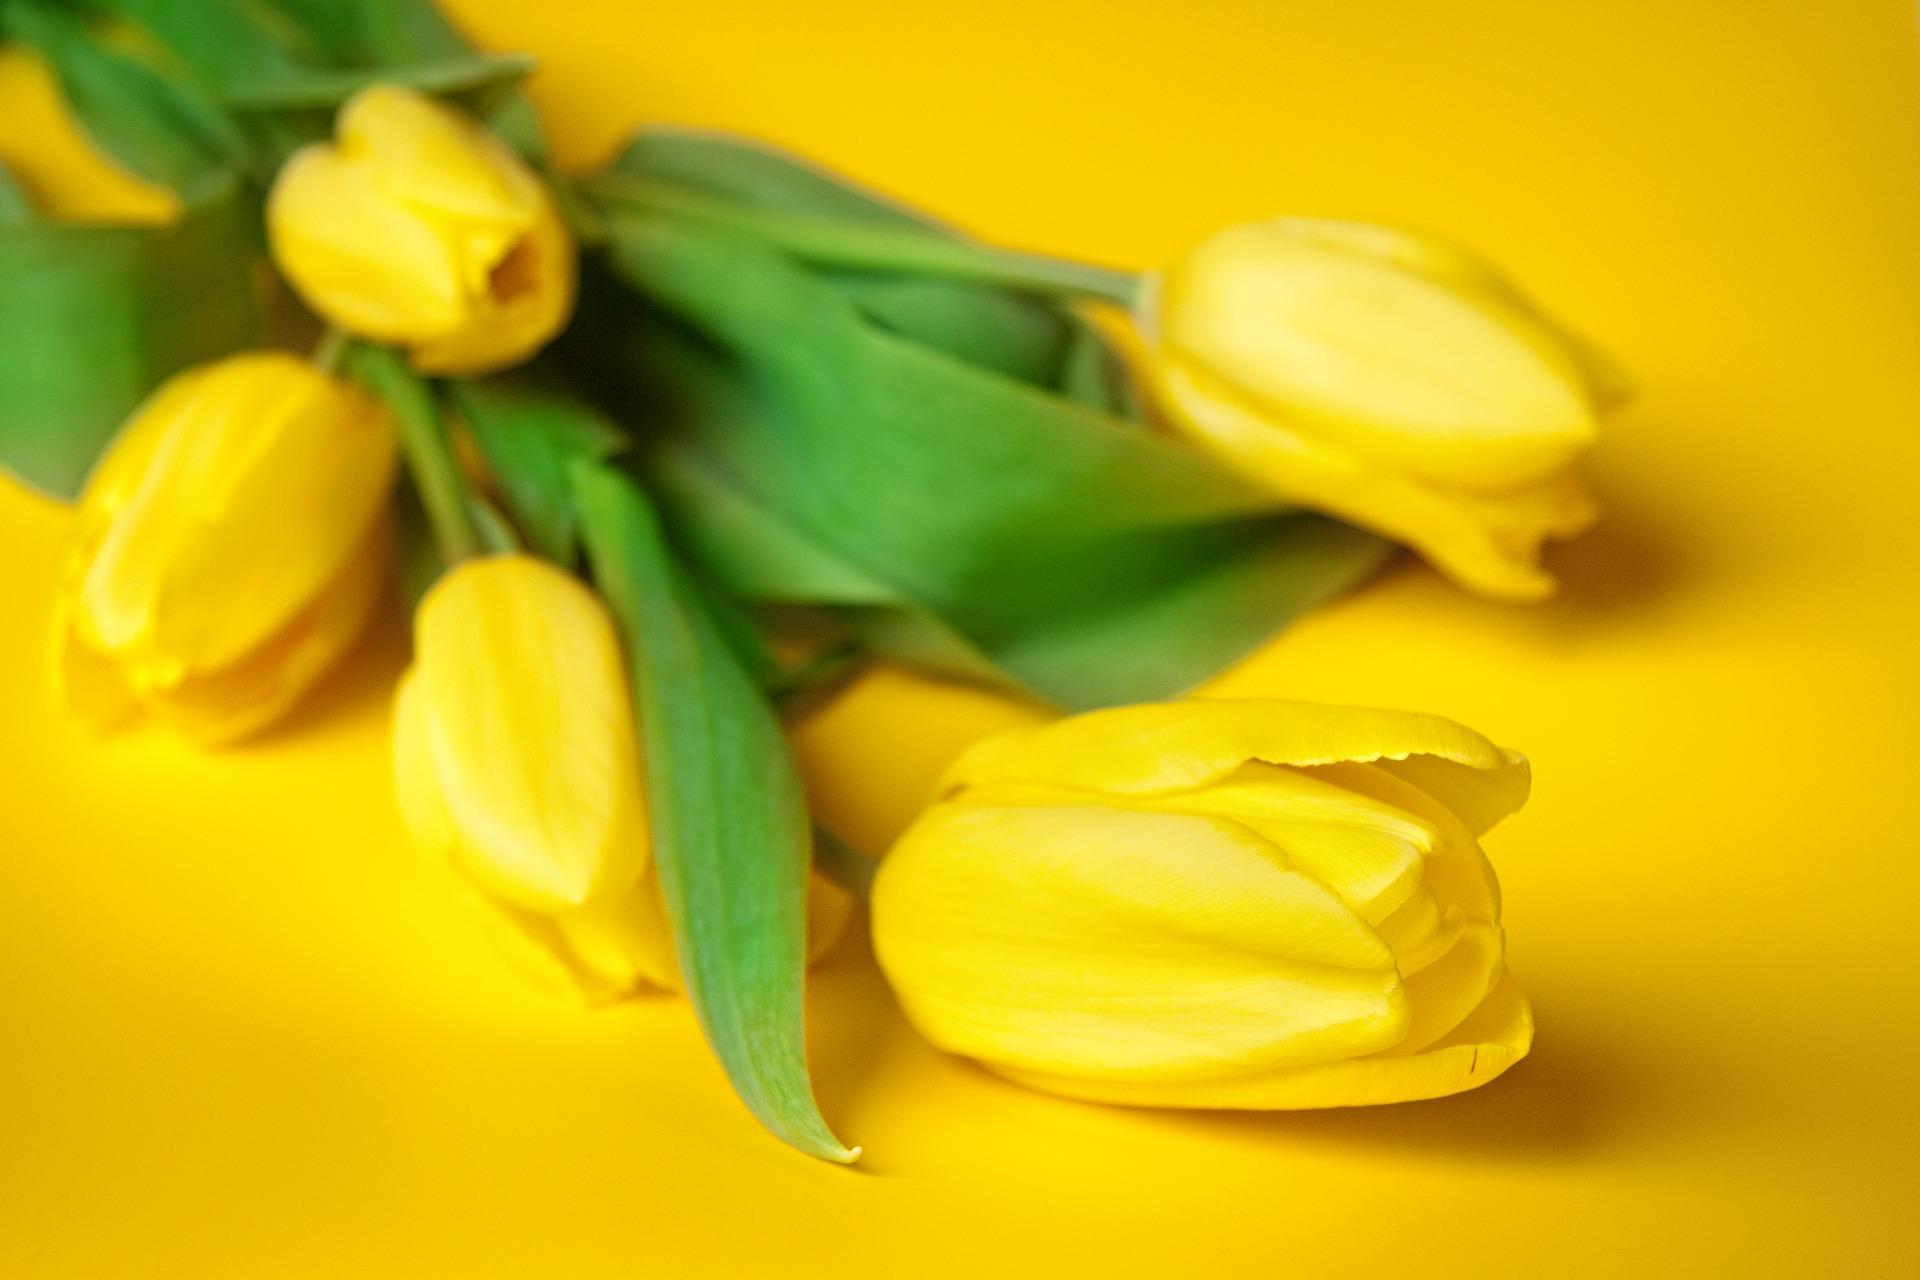 Keltaiset tulppaanit tuovat kotiin pirteää pääsiäistunnelmaa. Niiden pariksi sopivat hyvin pajun- tai koivunoksat. (Kuva: Pixabay)